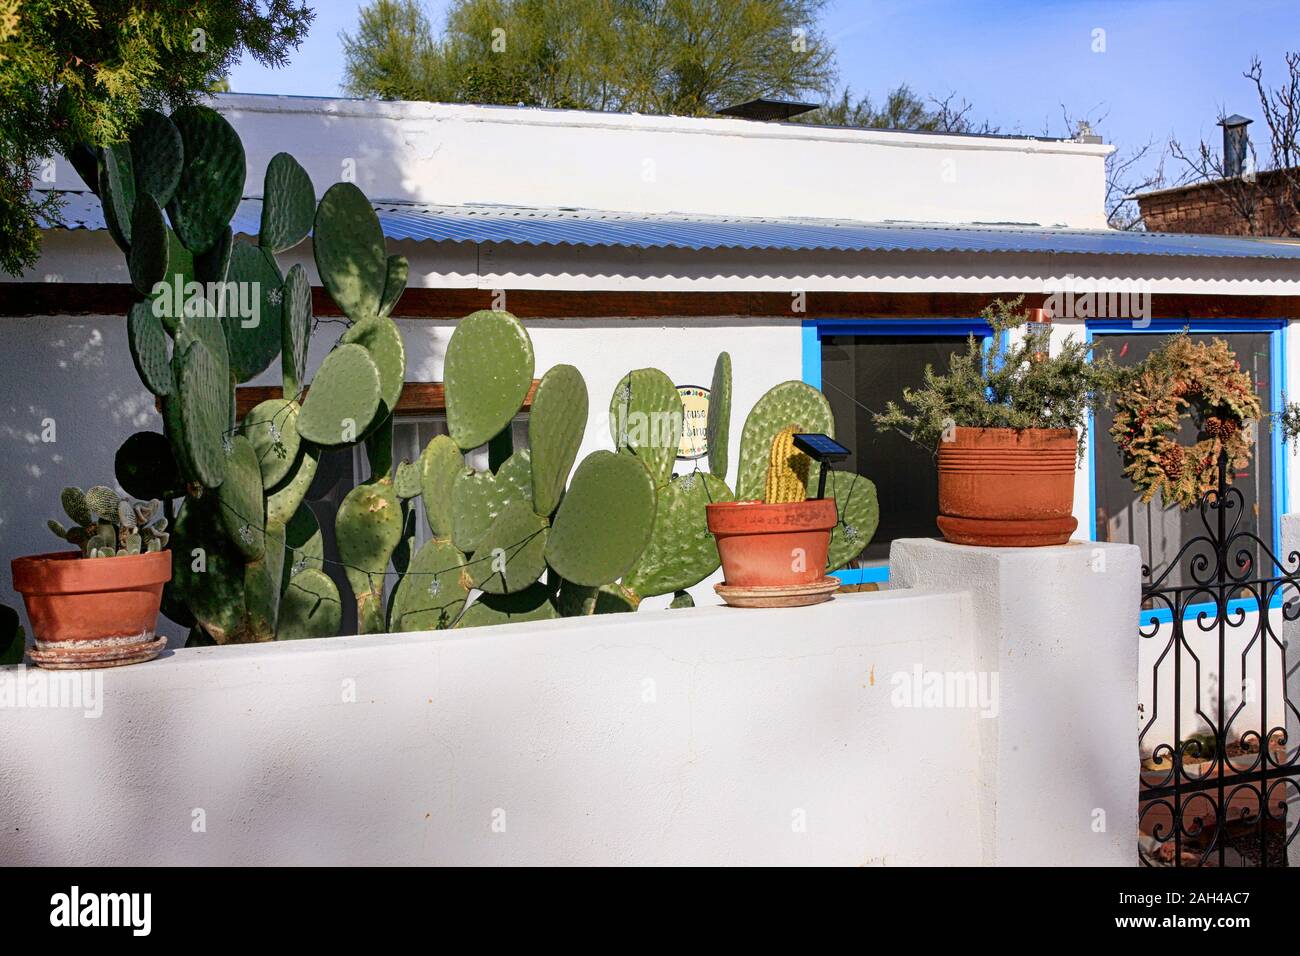 Adobe style Home mit Töpfen von Kakteen und einem barbary Abb. Kakteen wachsen im Vorgarten in Tubac, Arizona Stockfoto